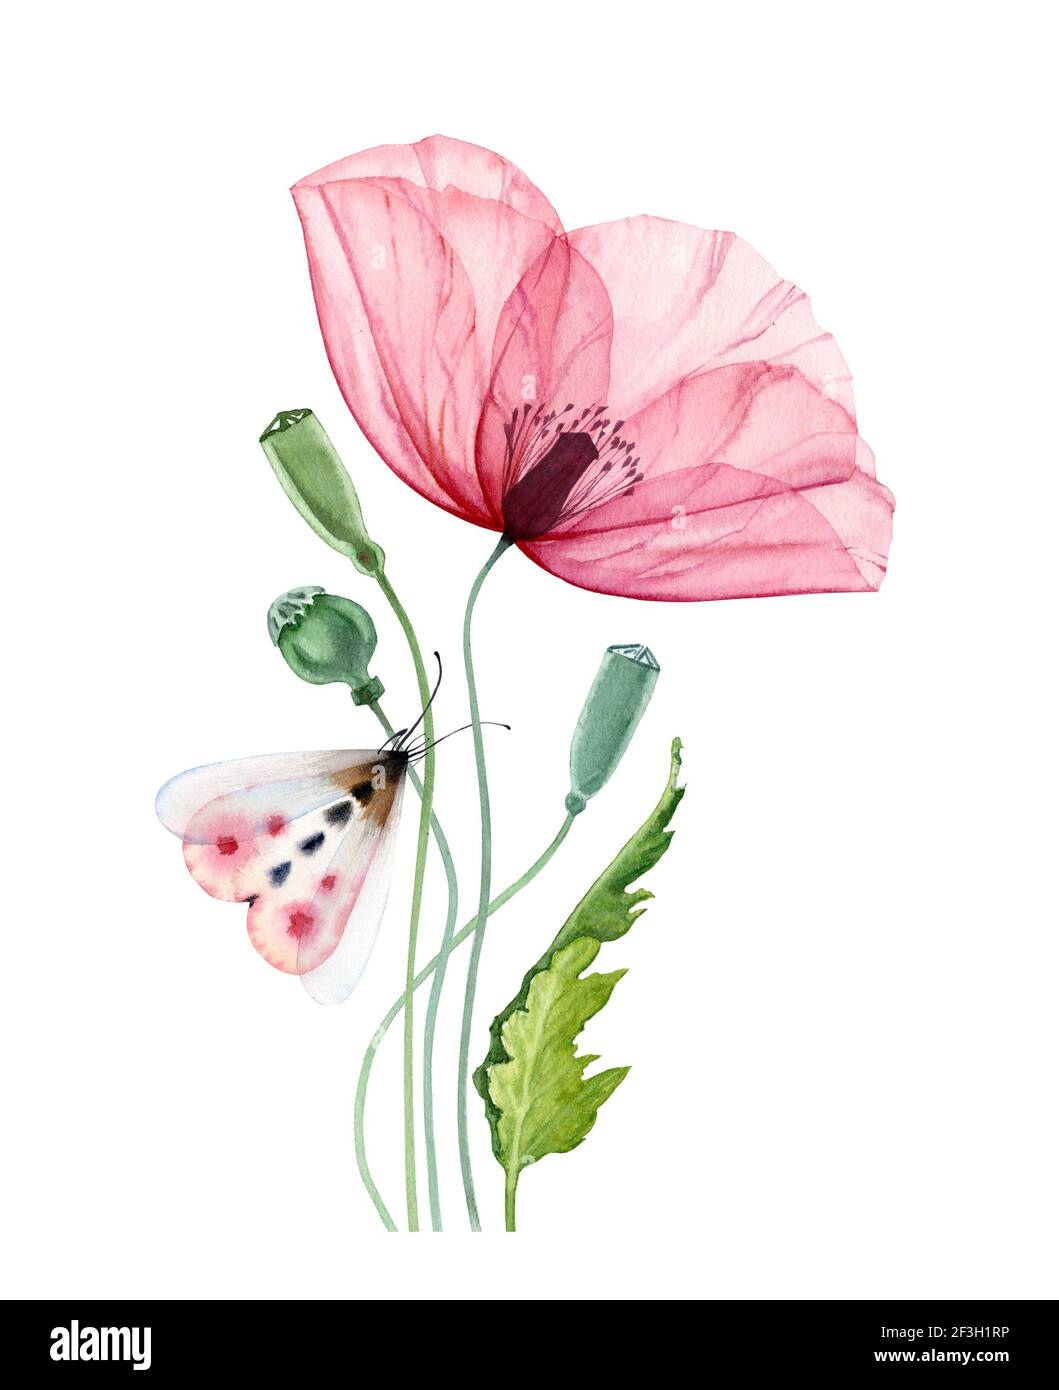 Aquarell Mohn Blume mit Motte. Große transparente rosa Blume mit bunten Schmetterling. Hand bemalt drucken bereit abstrakte Kunstwerk. Botanisch Stockfoto